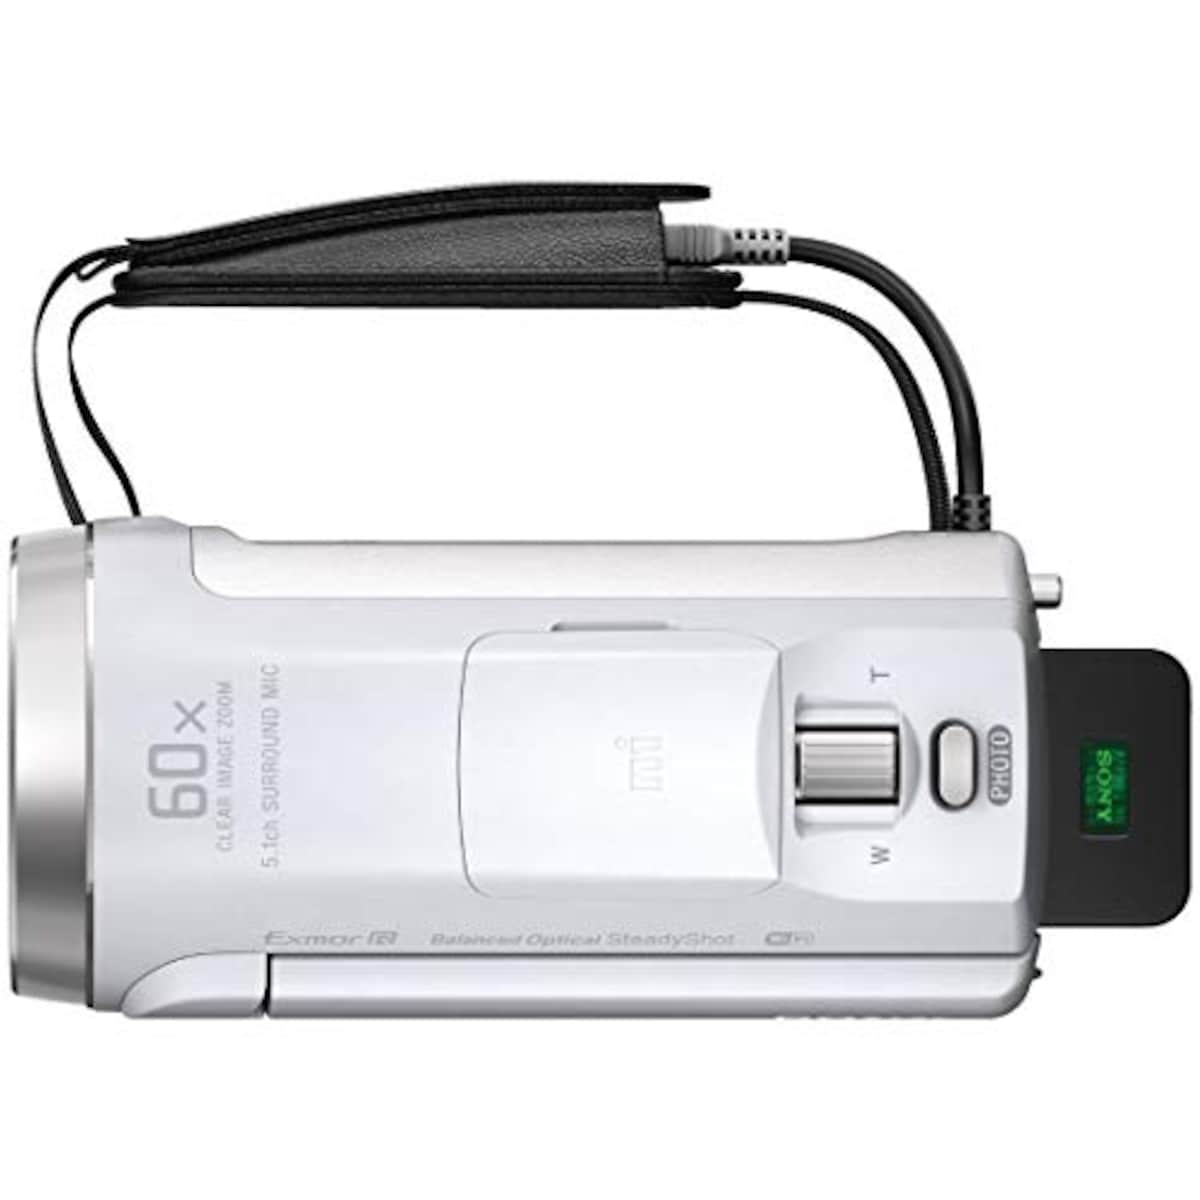  【CX680 と ケース&ストラップ セット】 大切なカメラをキズや汚れからガードしたい方に。HDR-CX680 ホワイト + LCS-MCS2 ライトブラウン画像14 